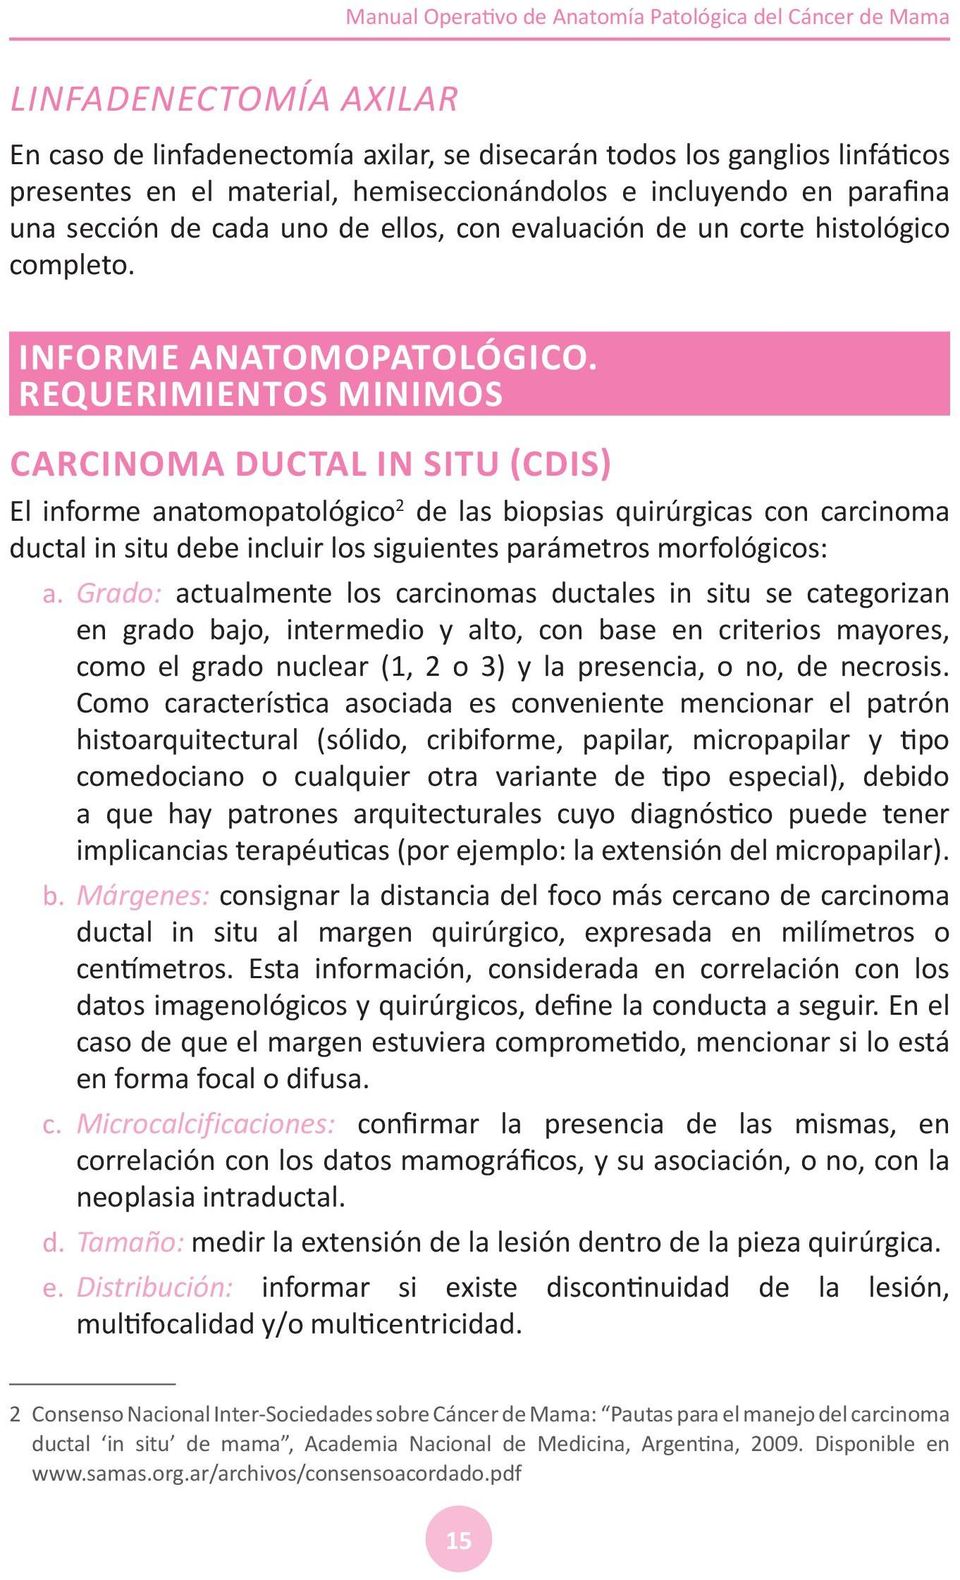 REQUERIMIENTOS MiNIMOS Carcinoma ductal in situ (CDIS) El informe anatomopatológico 2 de las biopsias quirúrgicas con carcinoma ductal in situ debe incluir los siguientes parámetros morfológicos: a.